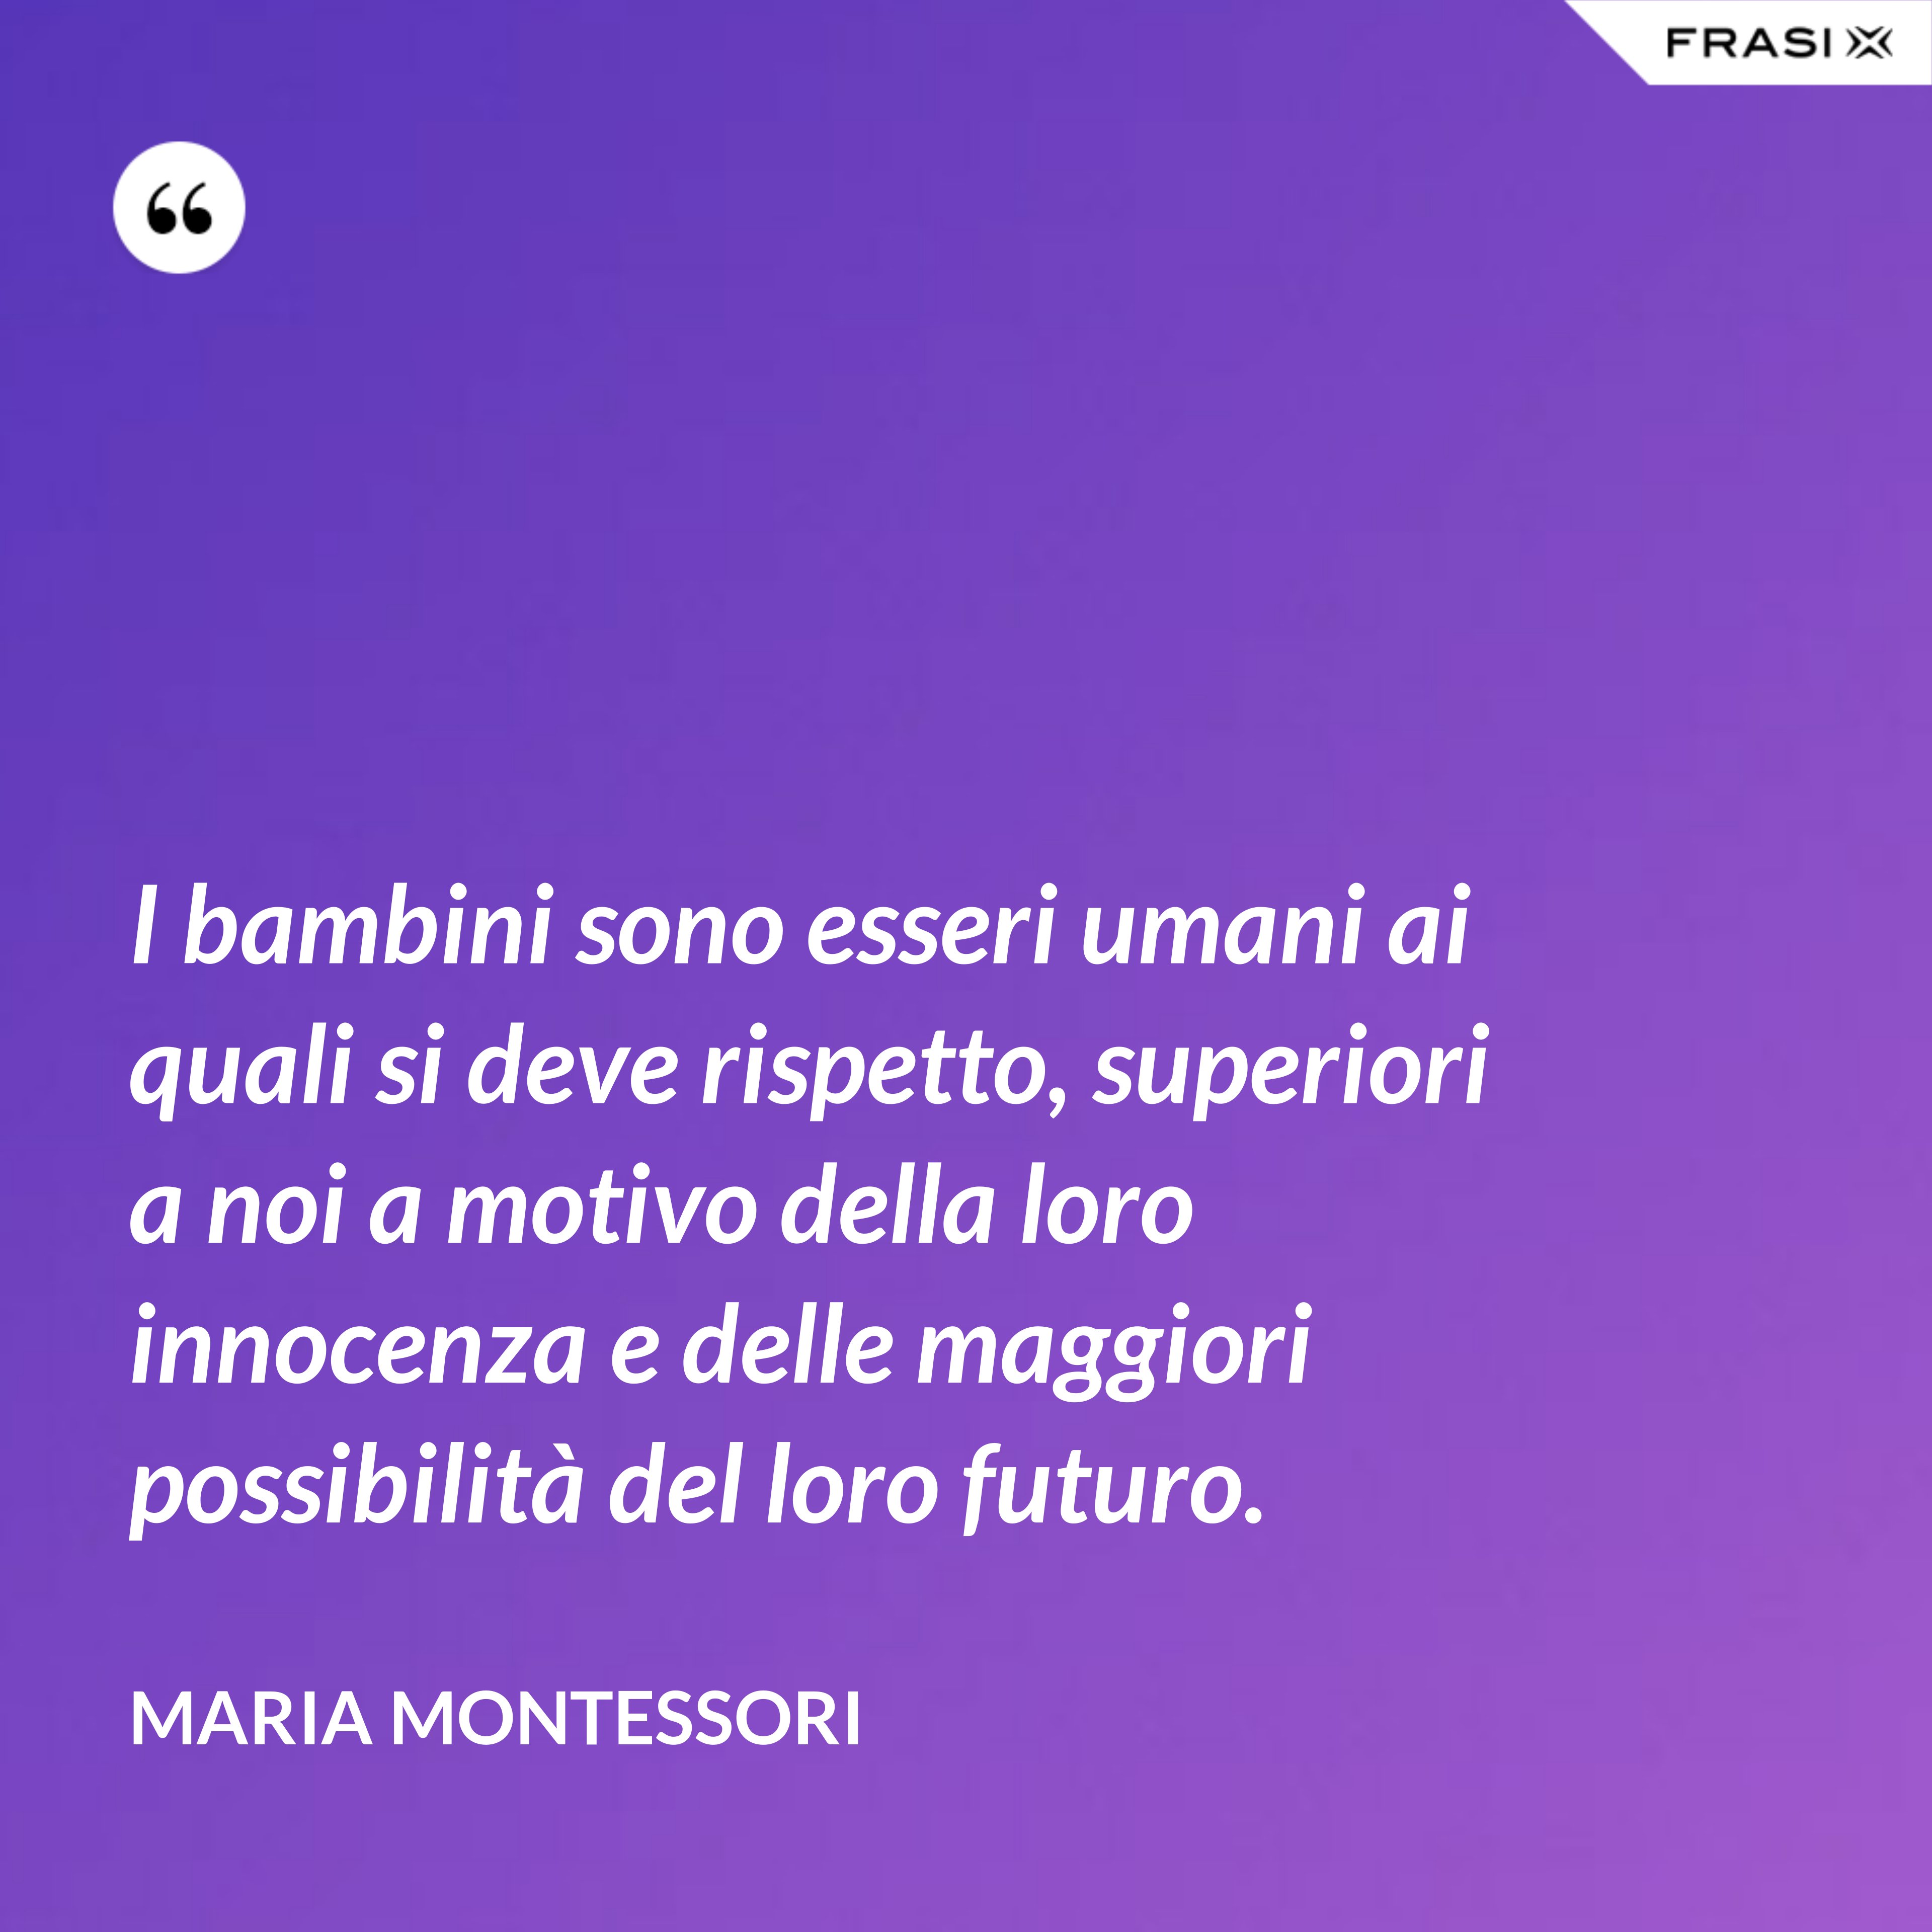 I bambini sono esseri umani ai quali si deve rispetto, superiori a noi a motivo della loro innocenza e delle maggiori possibilità del loro futuro. - Maria Montessori